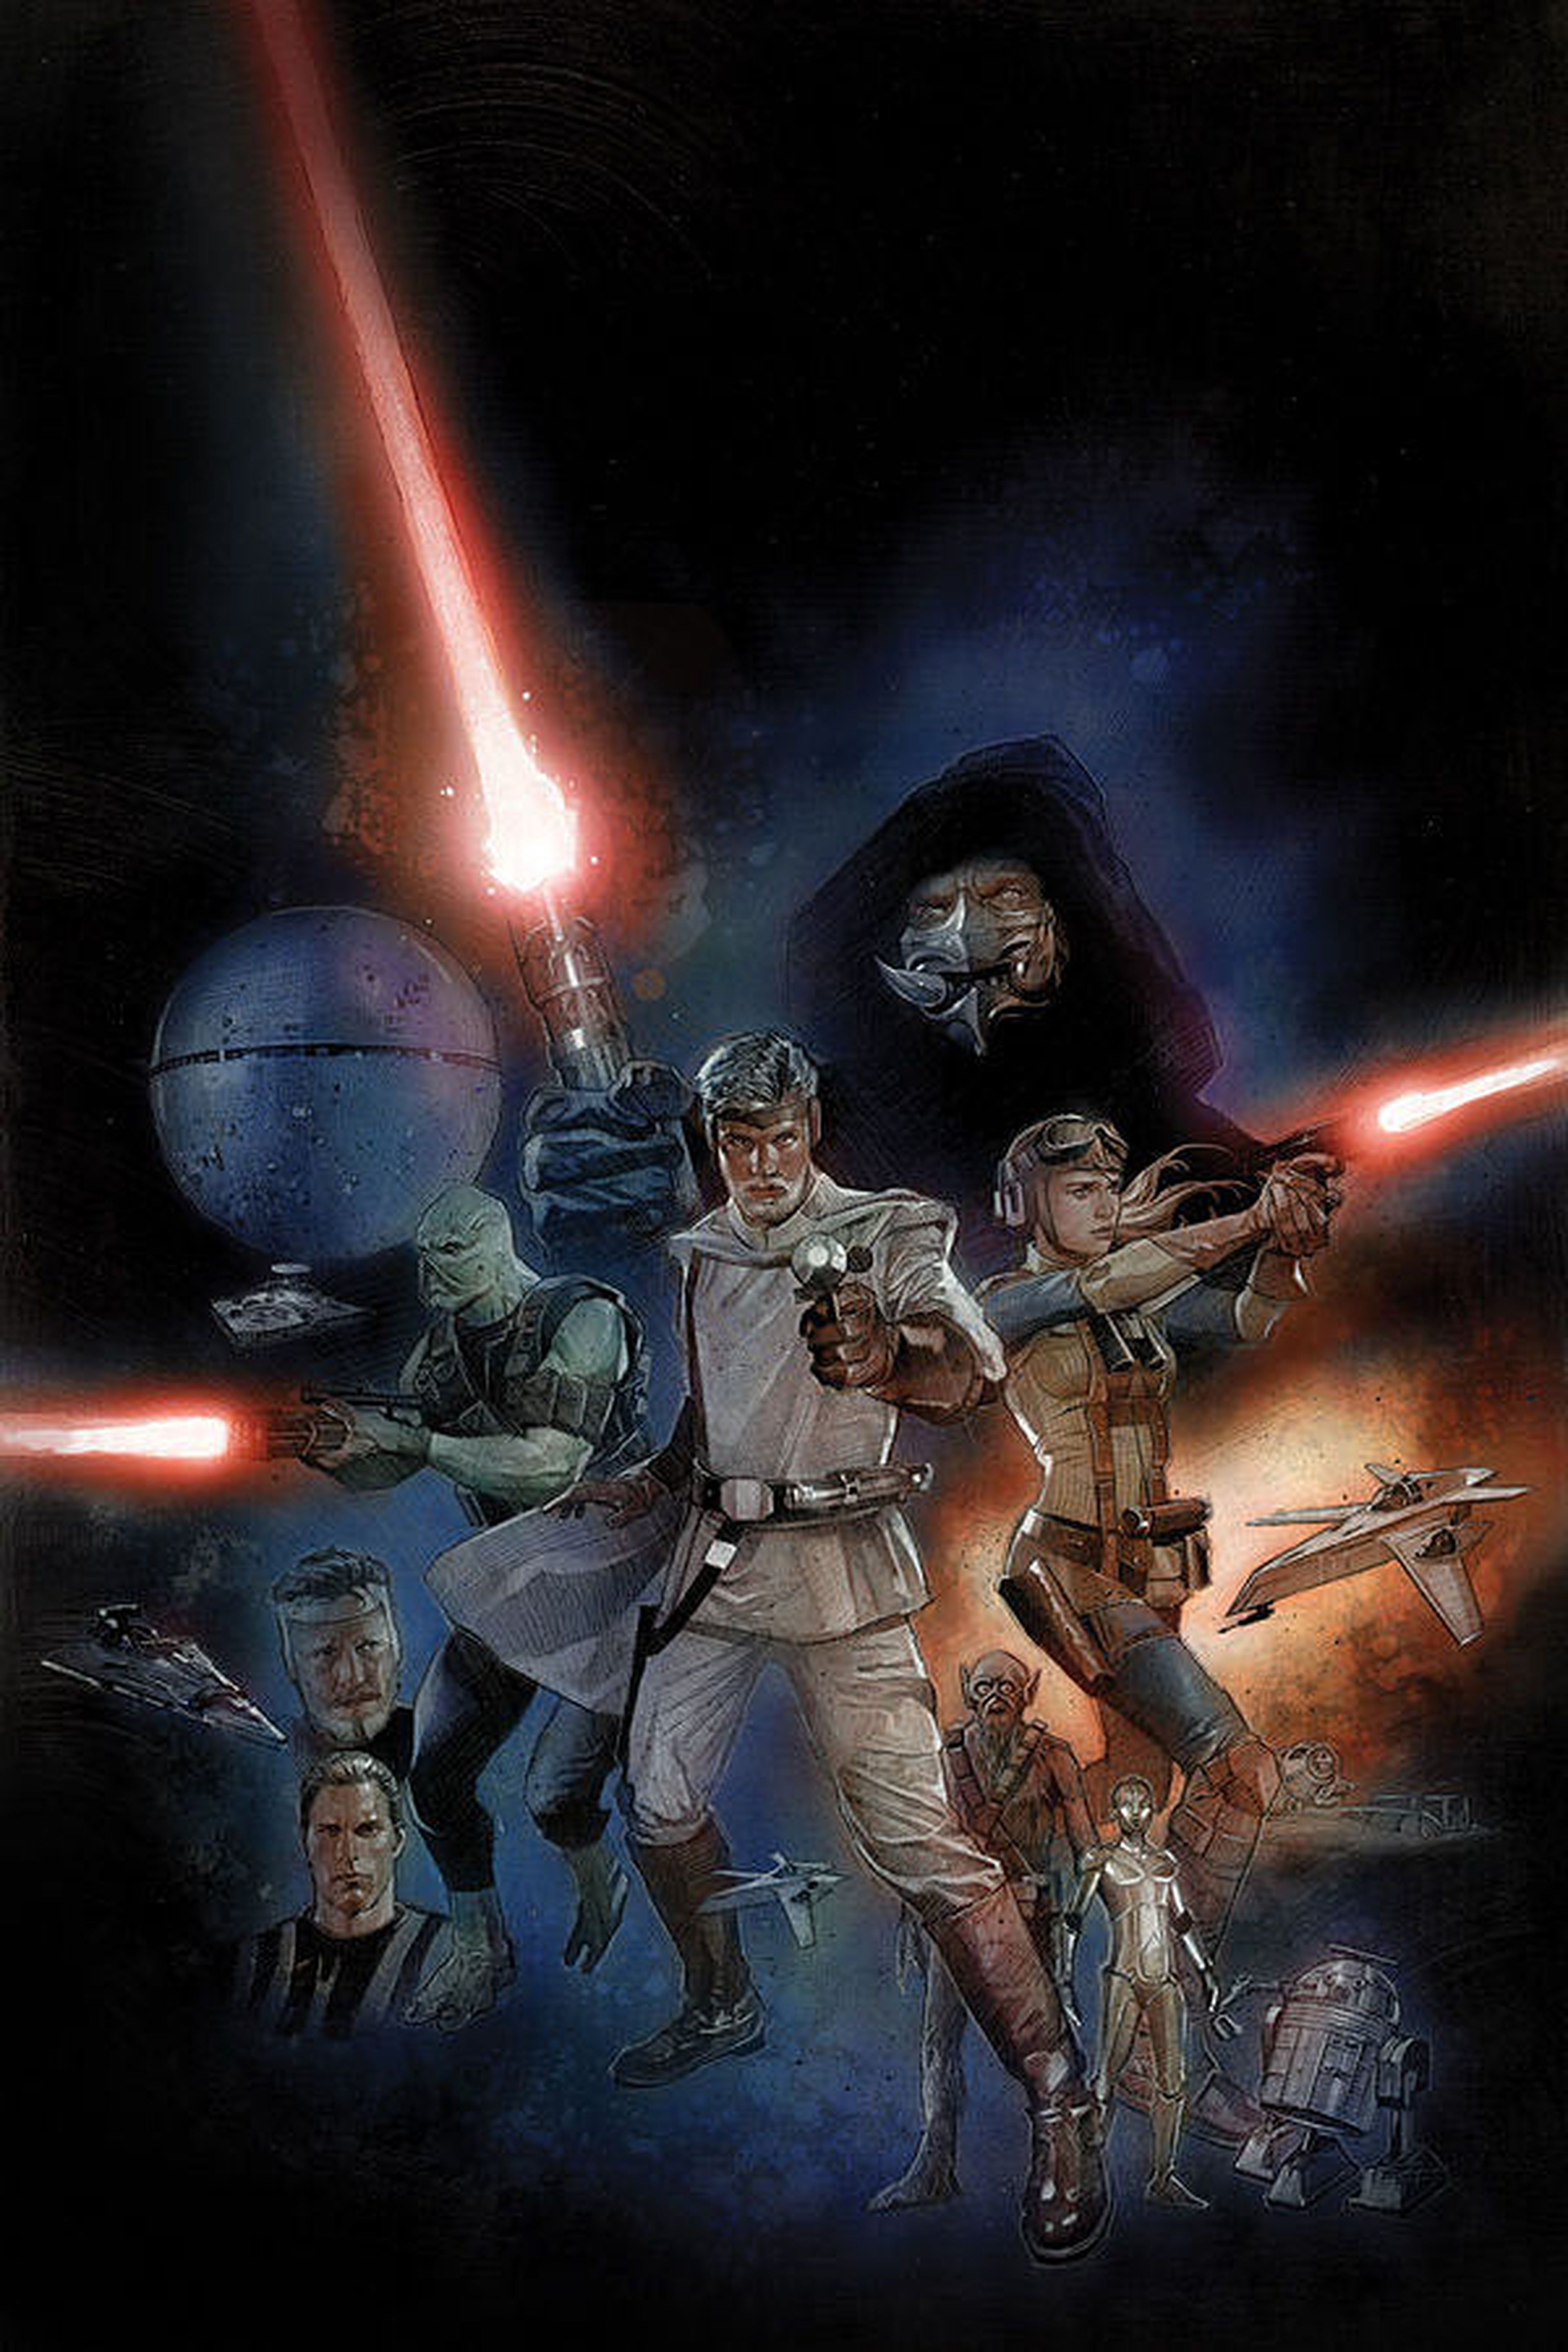 Avance: Primeras páginas de The Star Wars